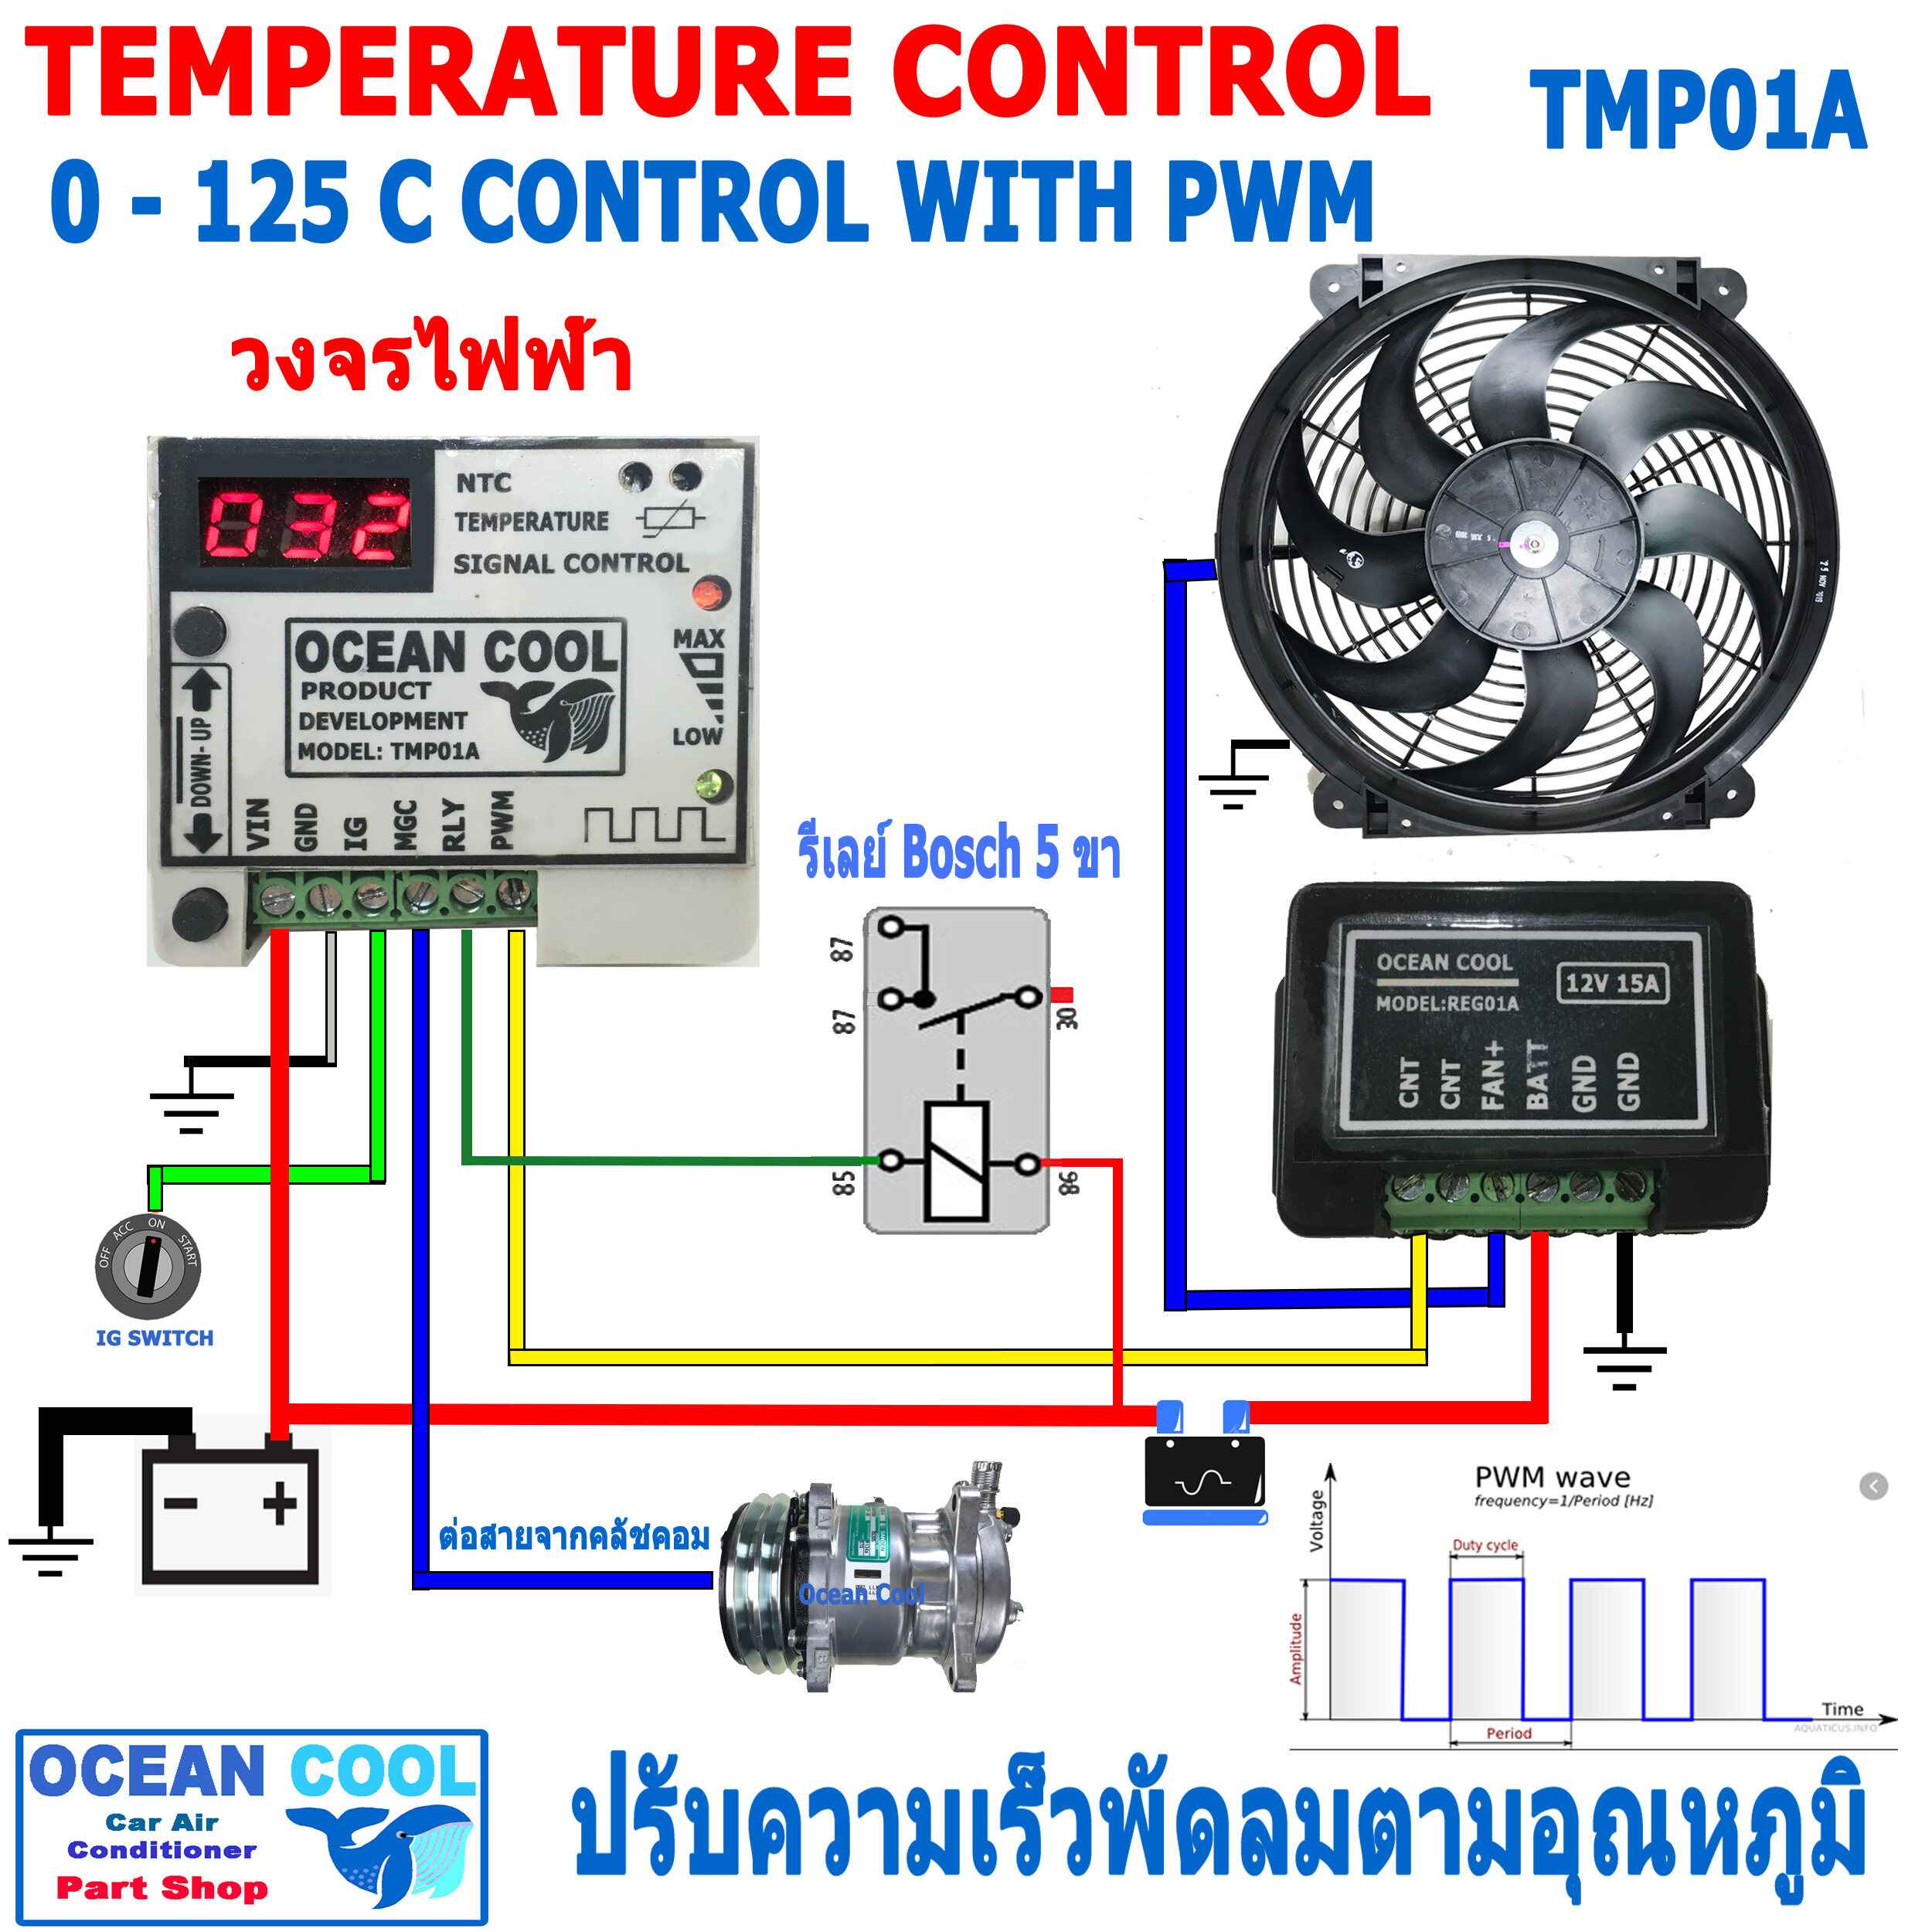 กล่องคุมพัดลมไฟฟ้า รถยนต์ TMP01A สามารถตั้งค่าอุณหภูมิได้ ปรับความเร็วได้ตามอุณหภูมิที่สูงขึ้น อุปกรณ์เสริม คุมพัดลมหม้อน้ำ Temp Control